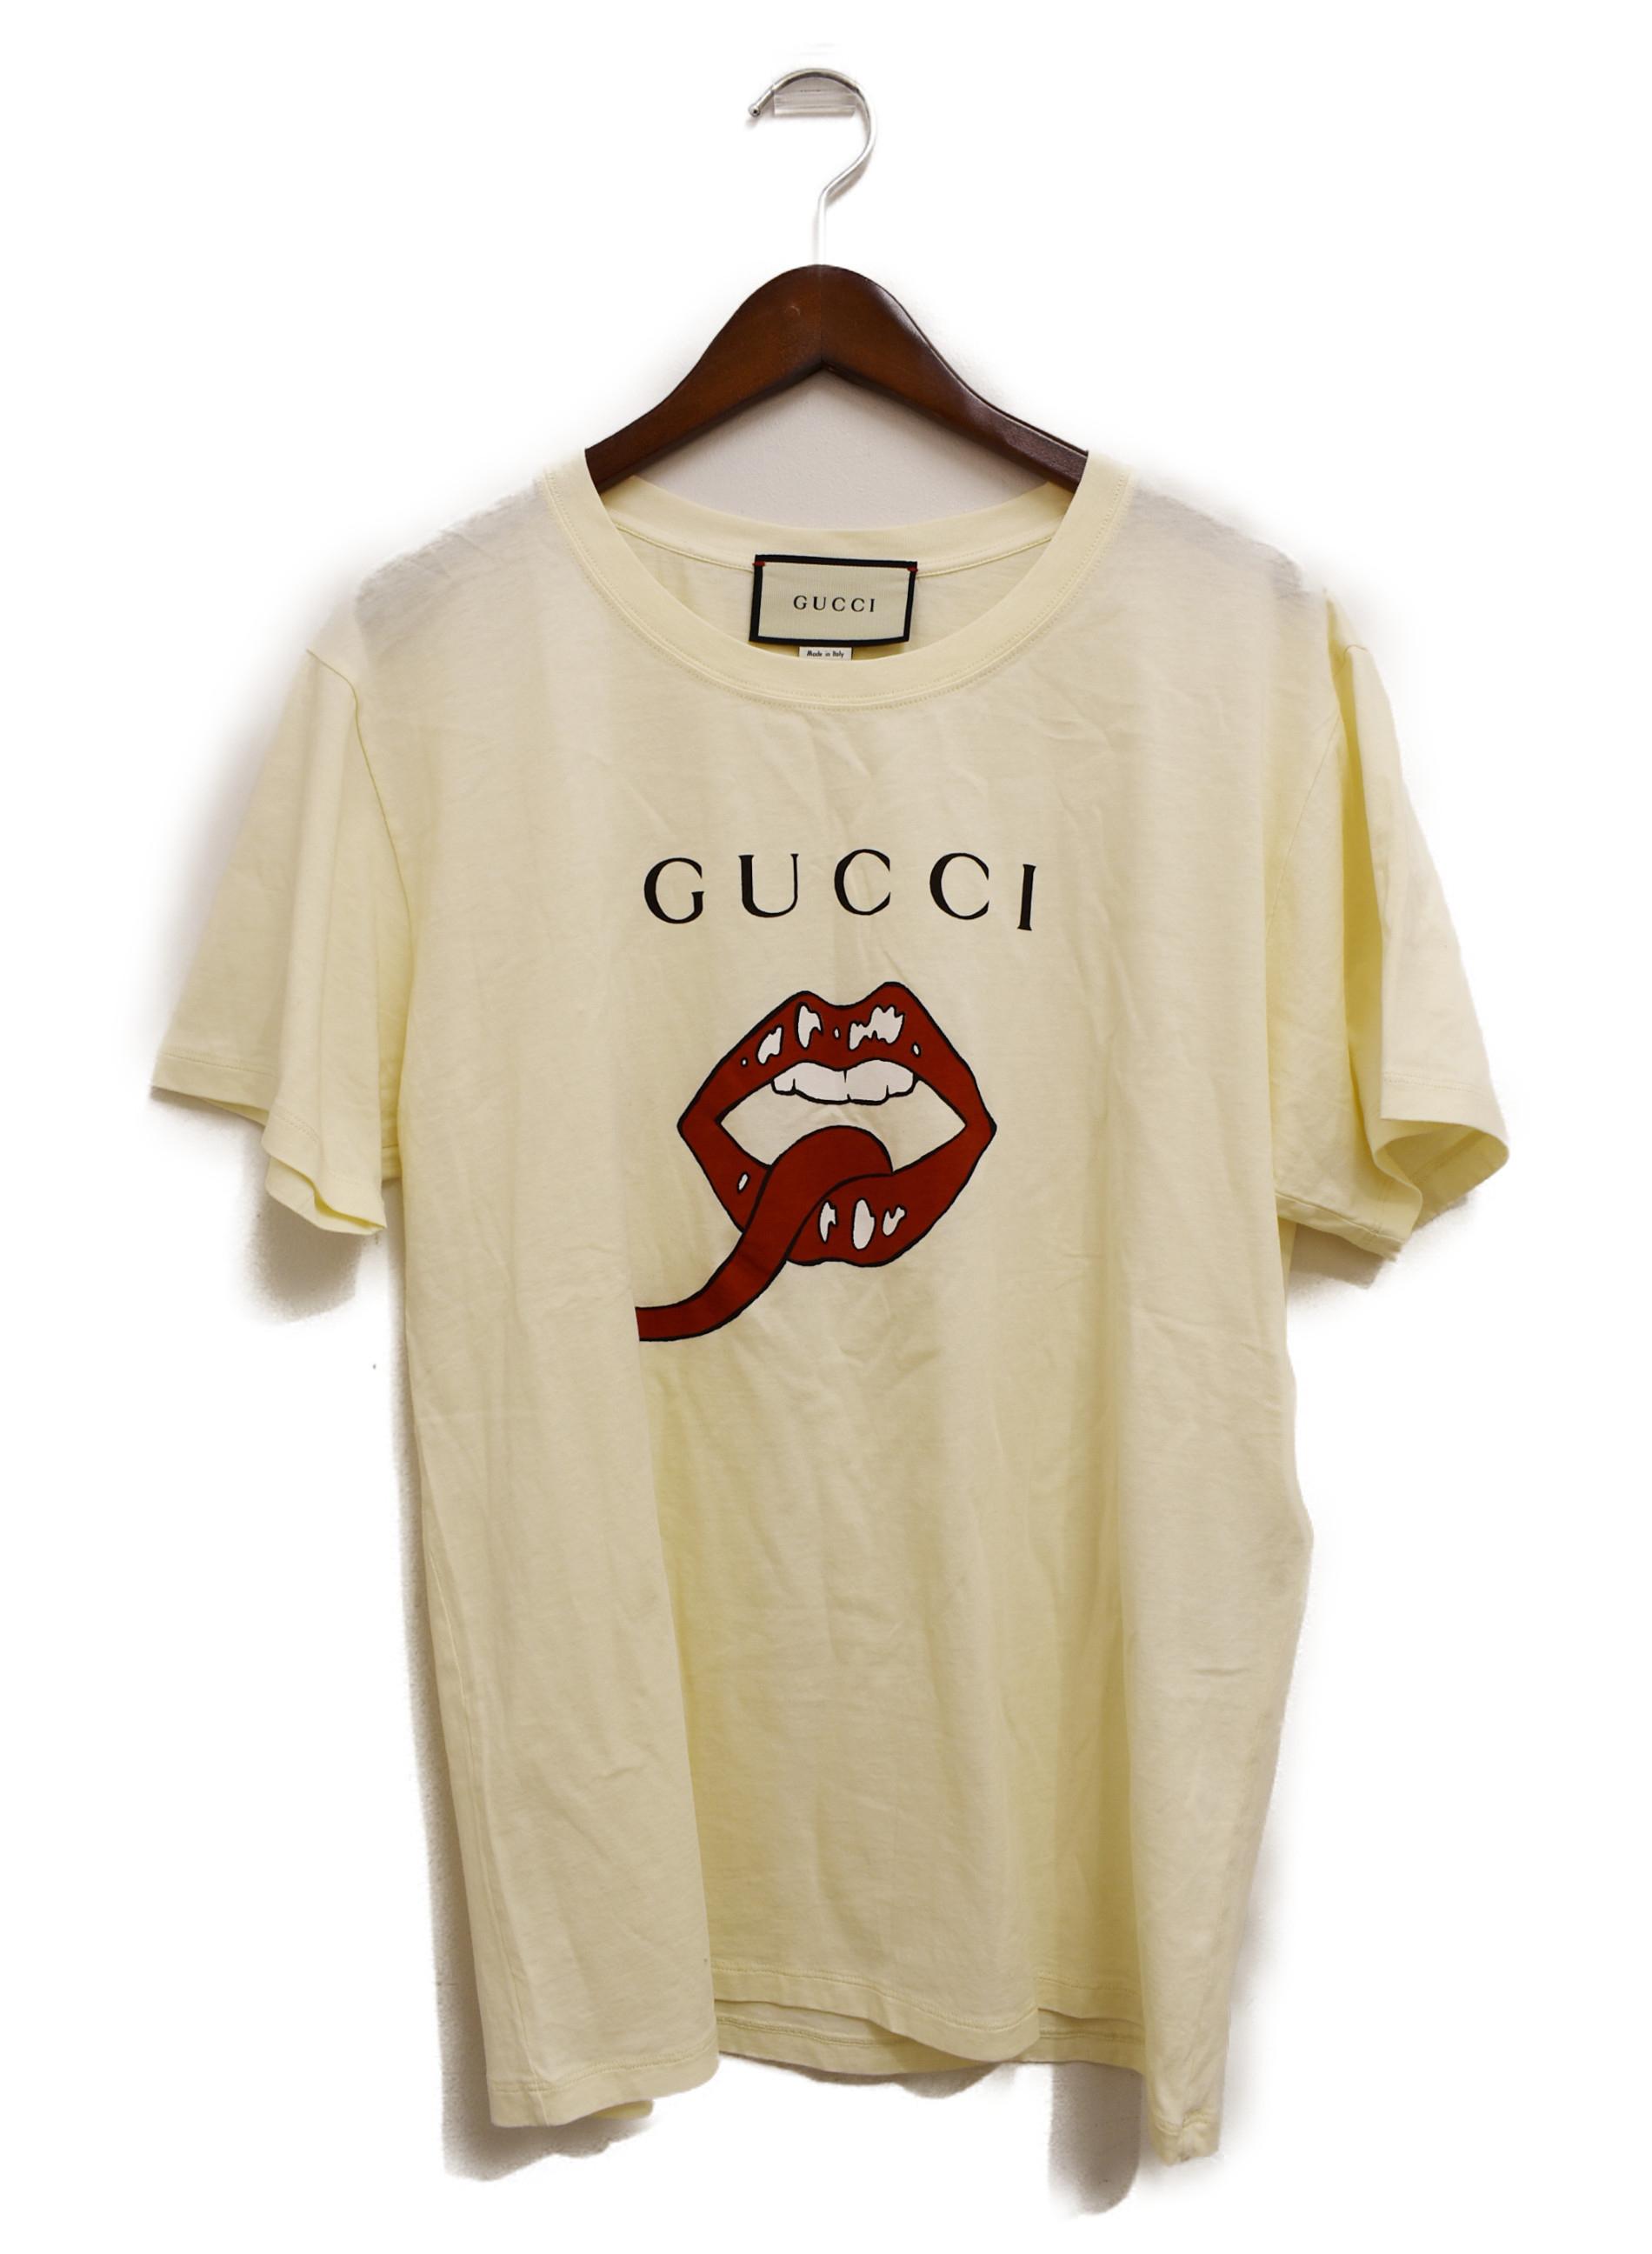 中古 古着通販 Gucci グッチ 19ss リップtシャツ サイズ S ブランド 古着通販 トレファク公式 Trefac Fashion